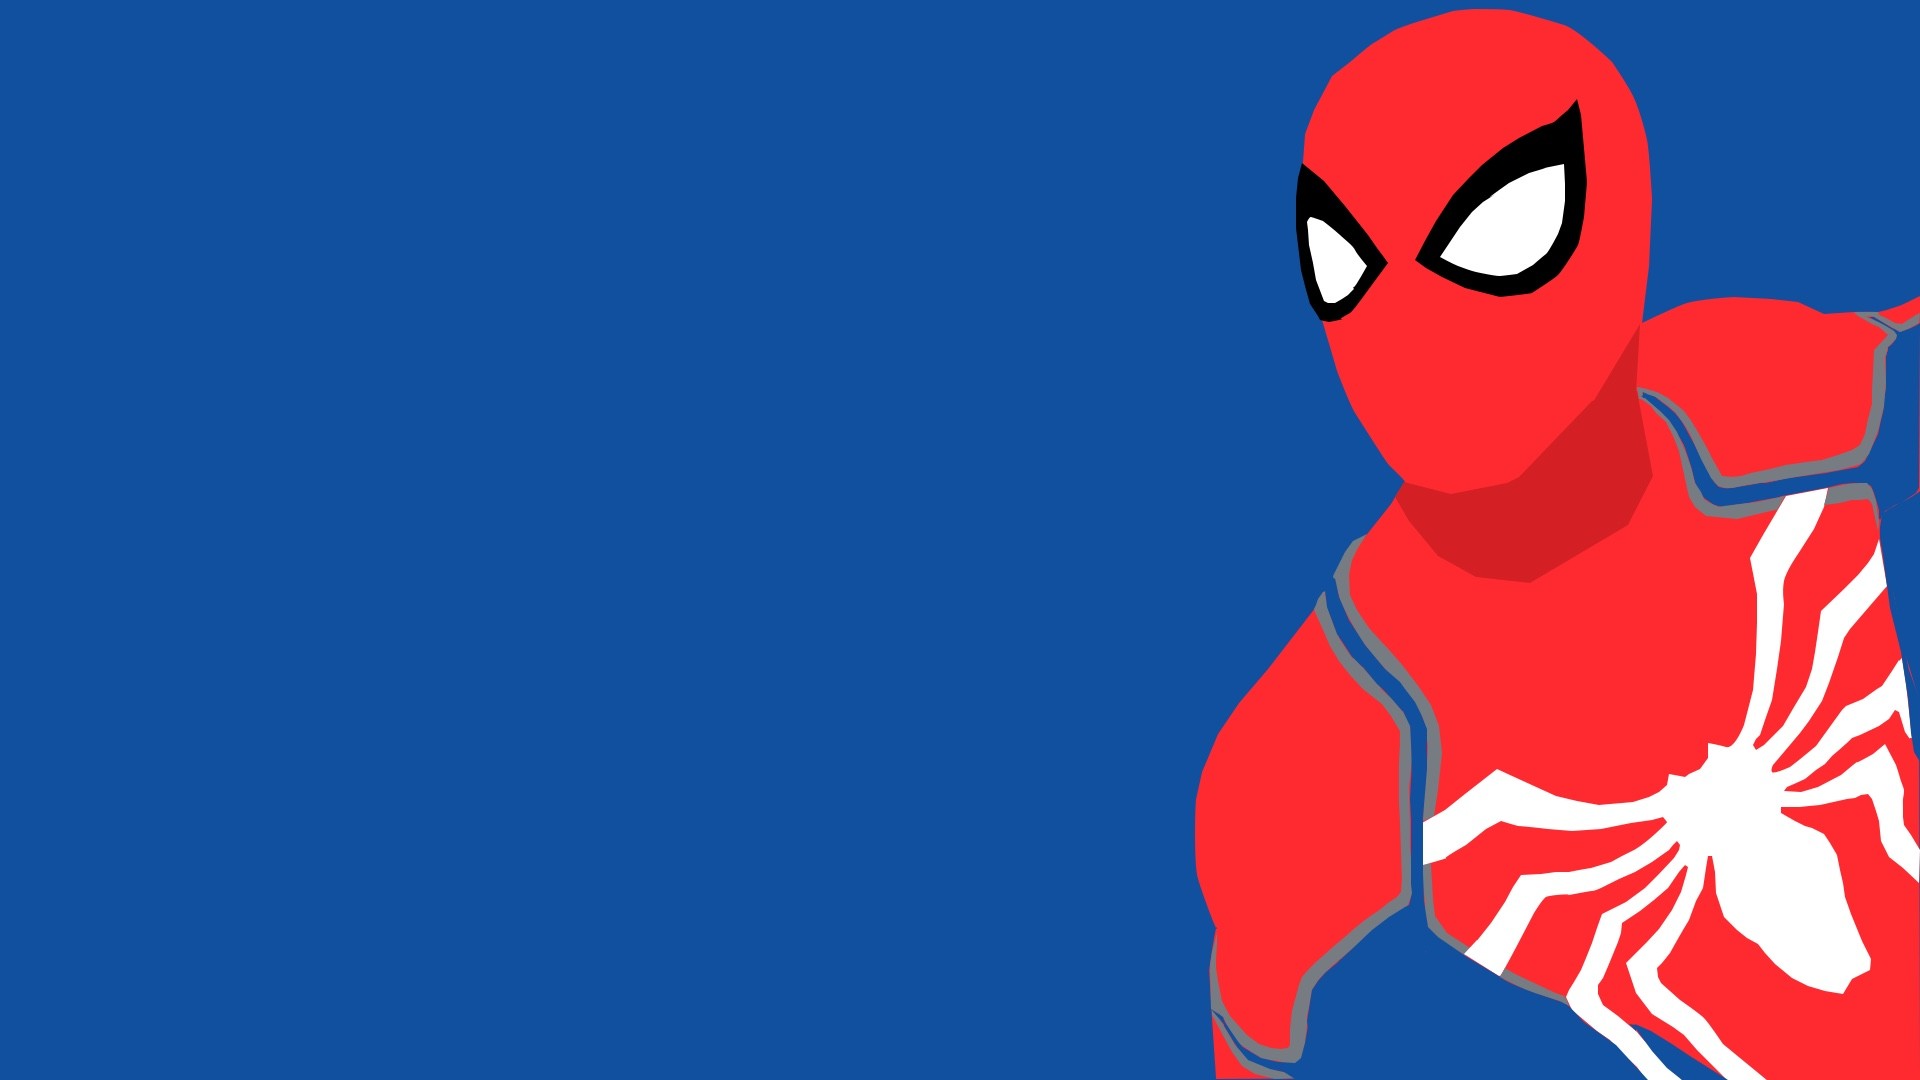 View 23 Minimalist Spider Man Desktop Background